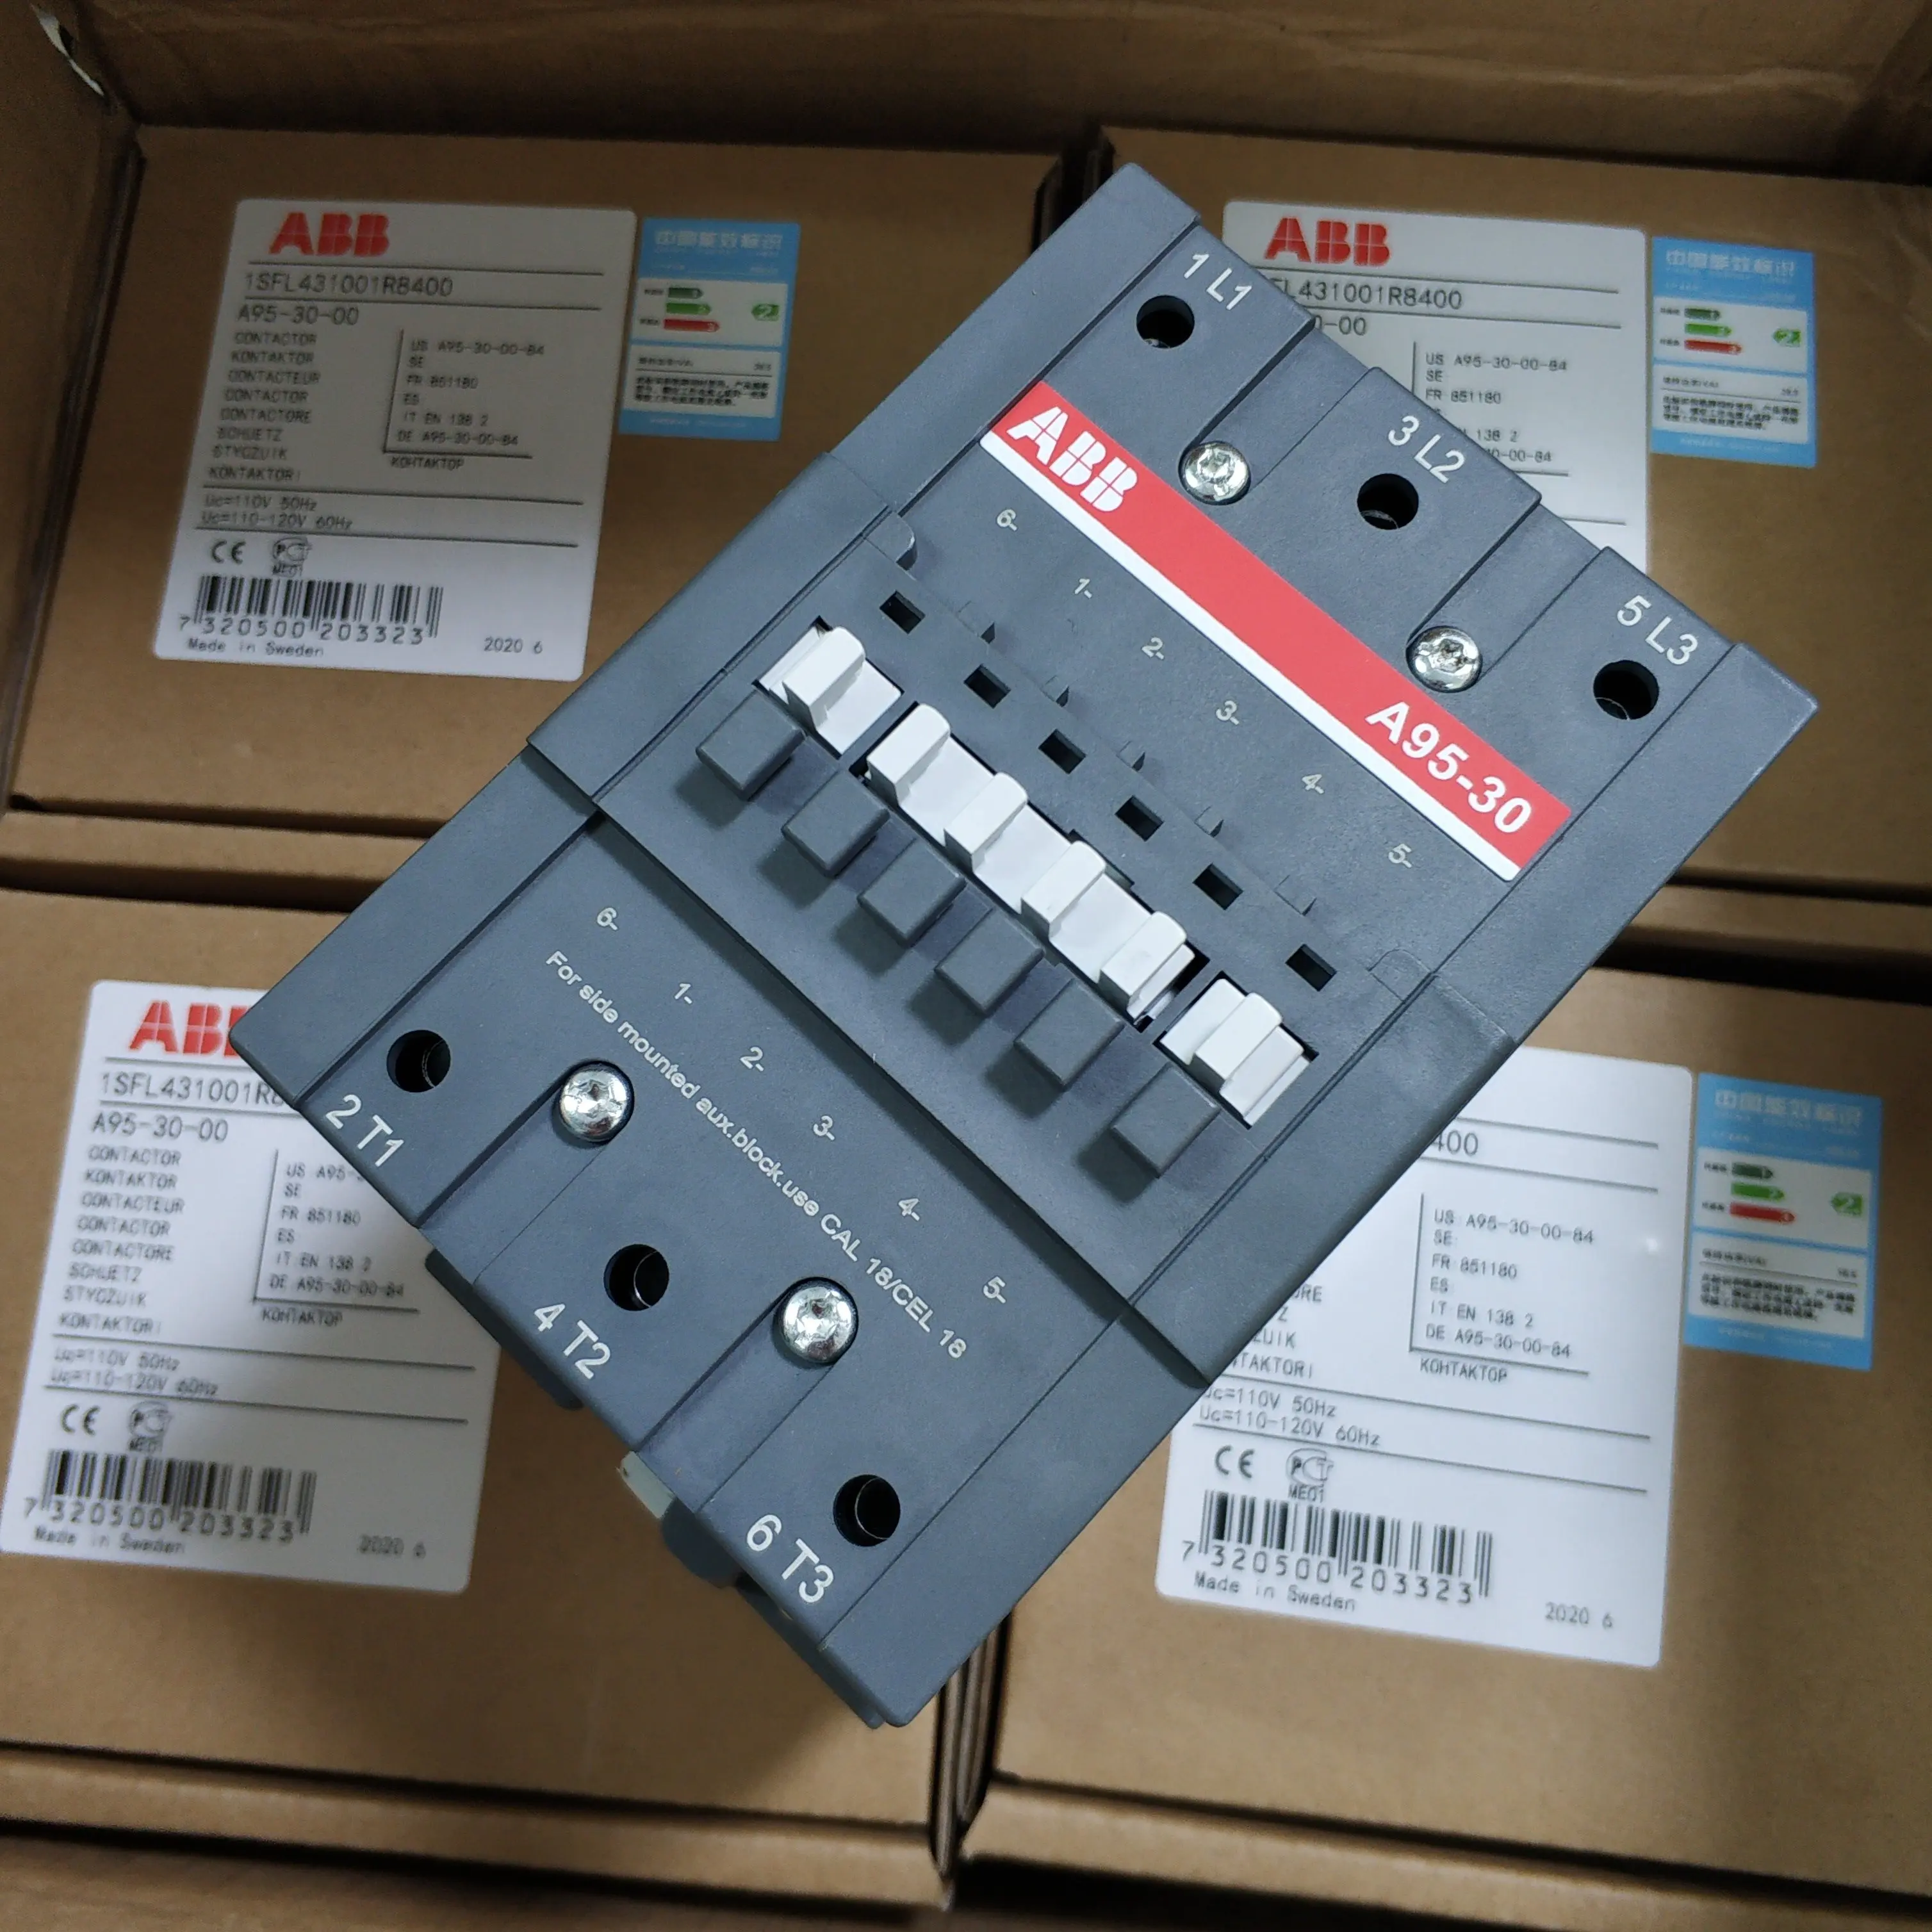 ABBs 3-фазный электрический контактор A95-30-00 110V-115V 1SFL431001R8400